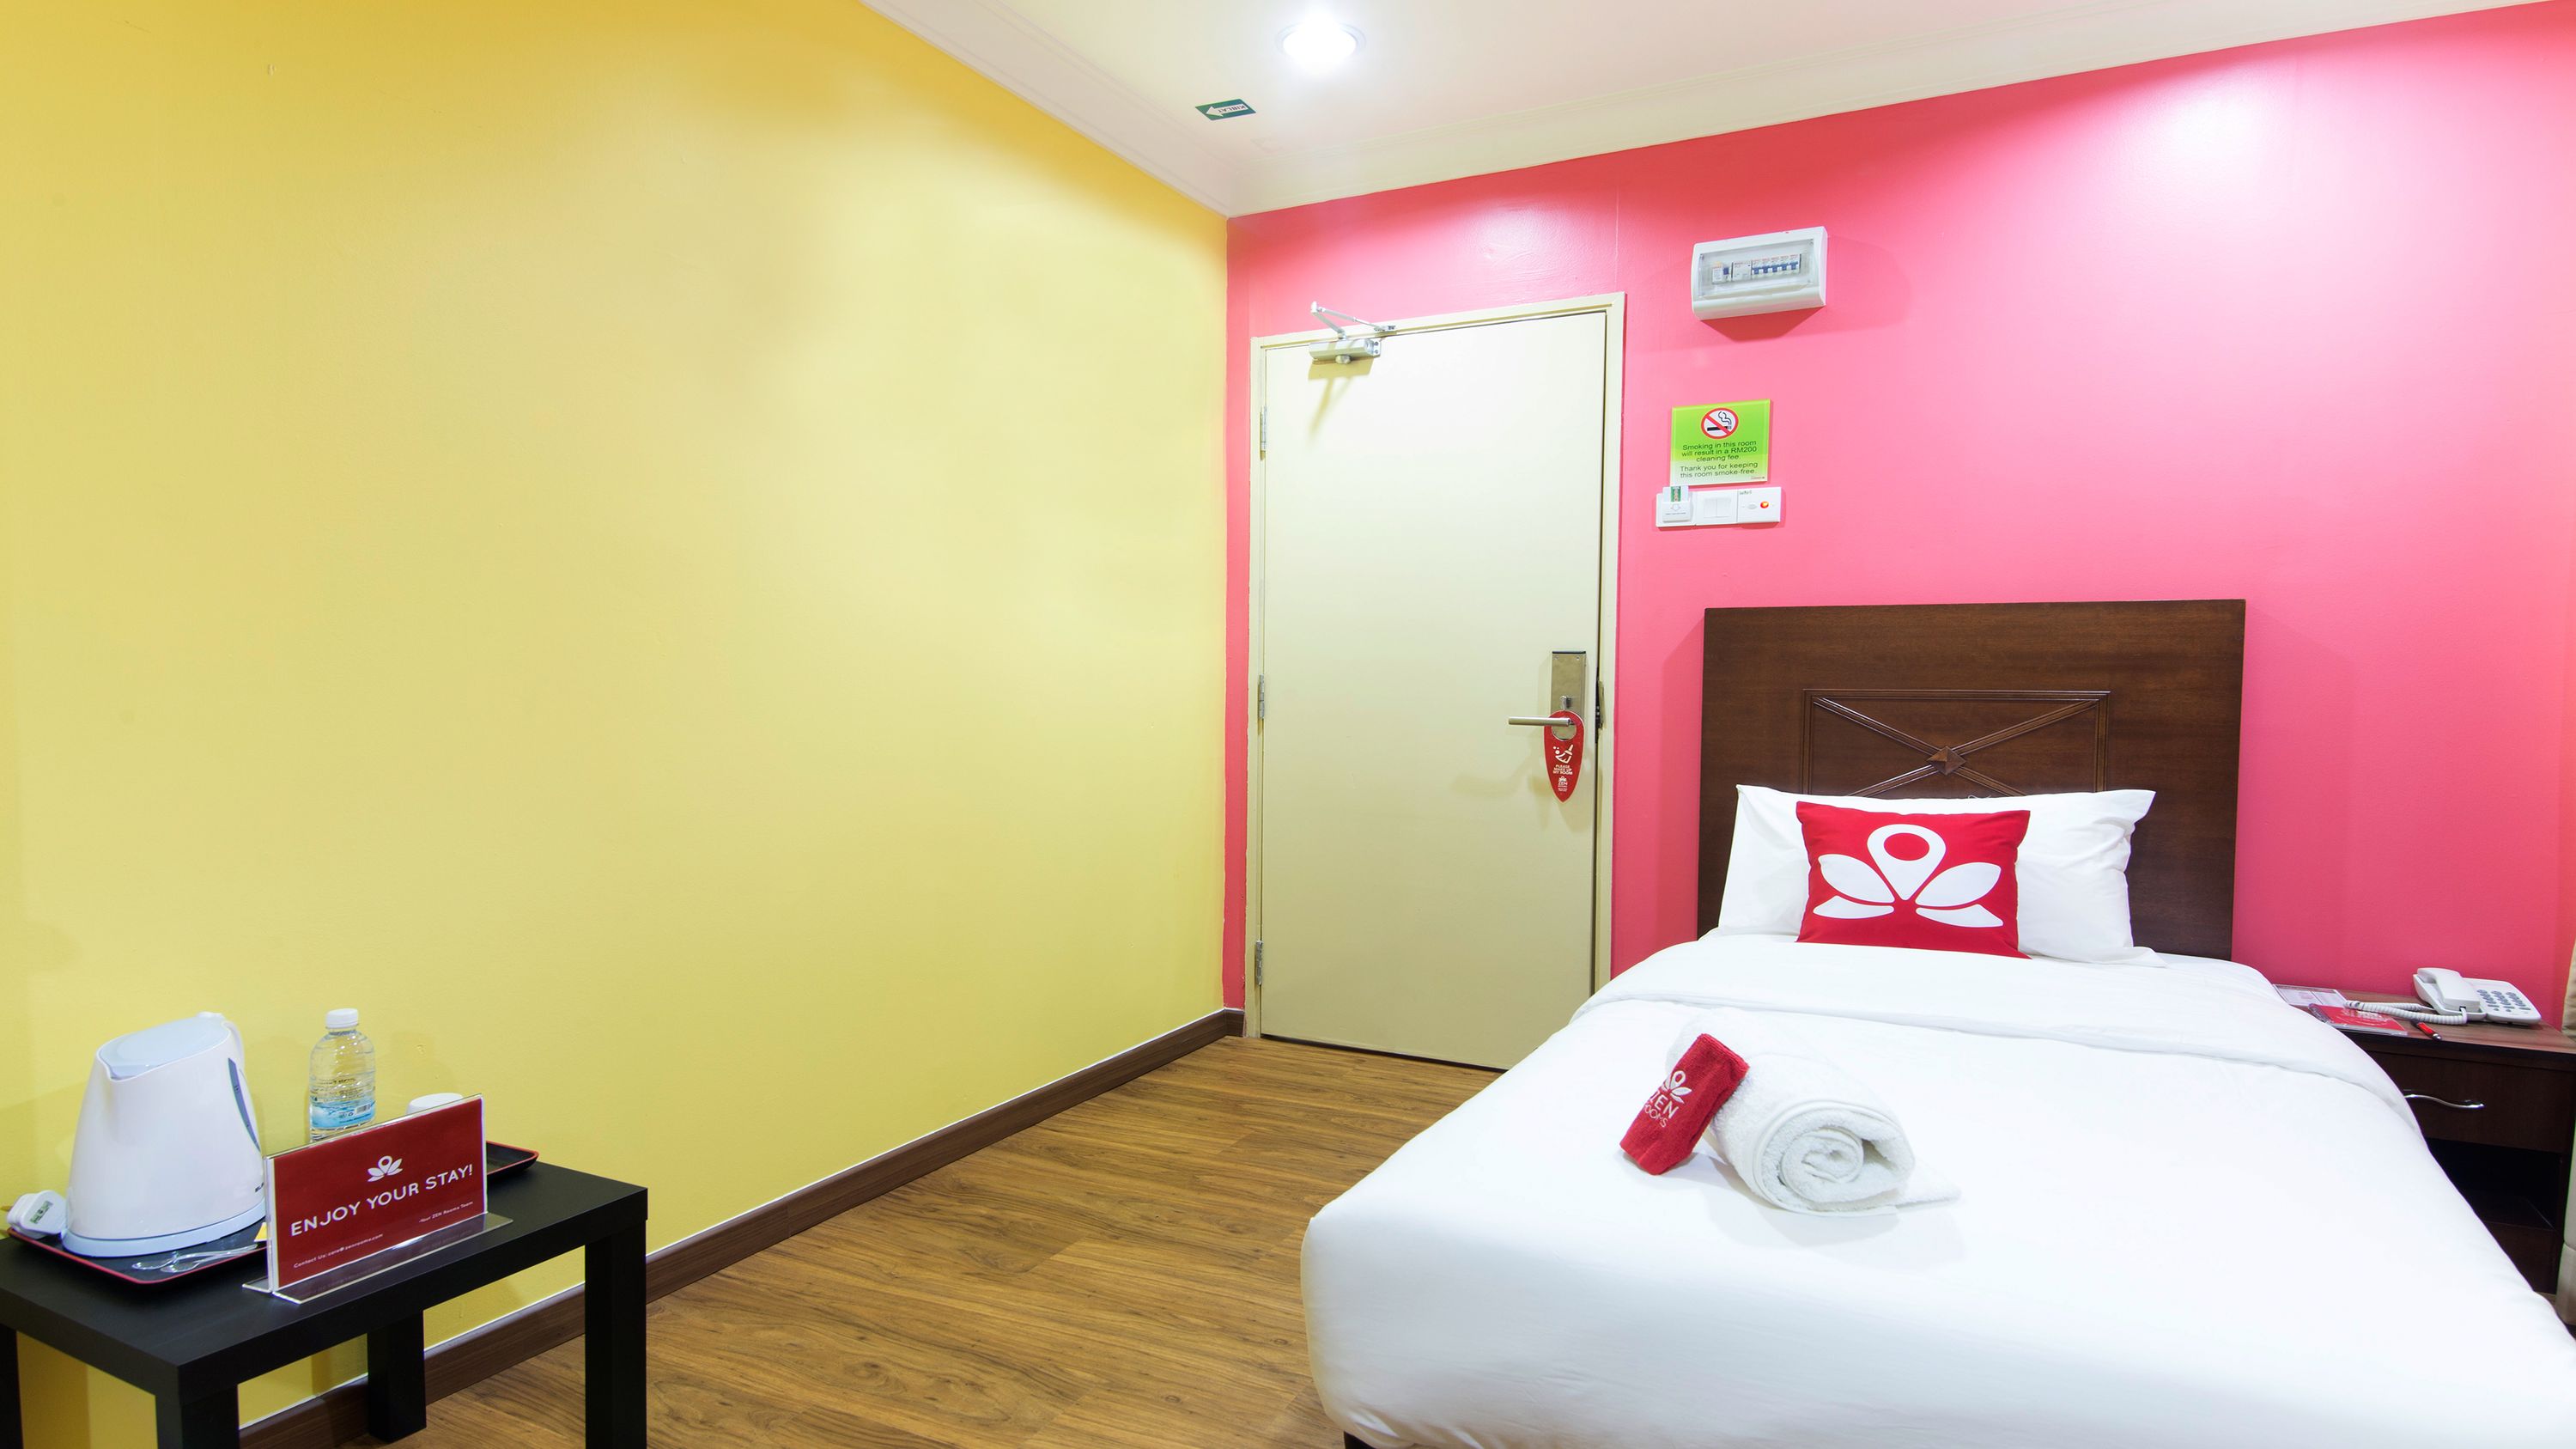 Hotel Sunjoy 9 by ZEN Rooms